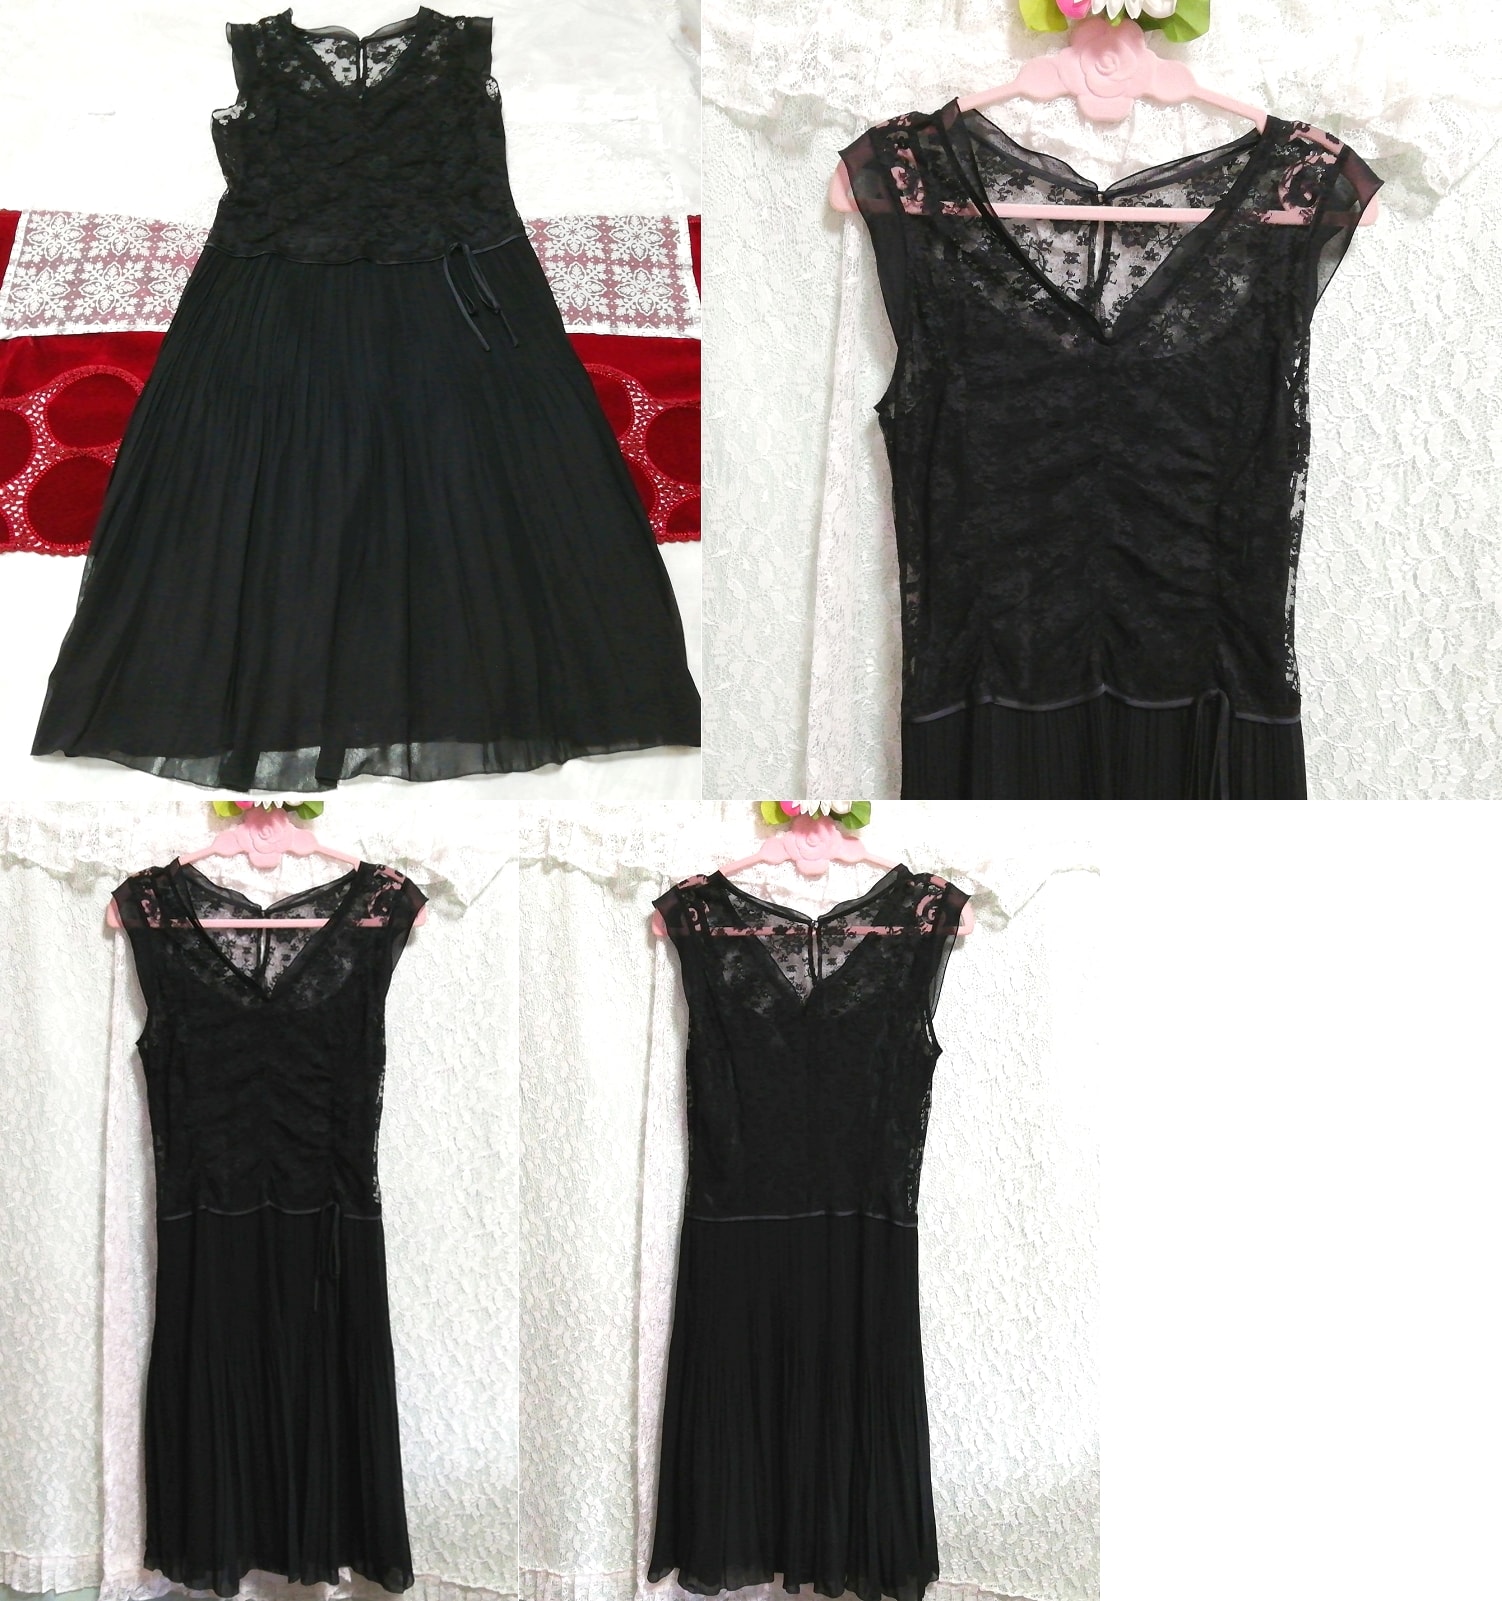 블랙 레이스 쉬폰 스커트 네글리제 나이트가운 나이트웨어 민소매 드레스, 패션, 숙녀 패션, 잠옷, 잠옷